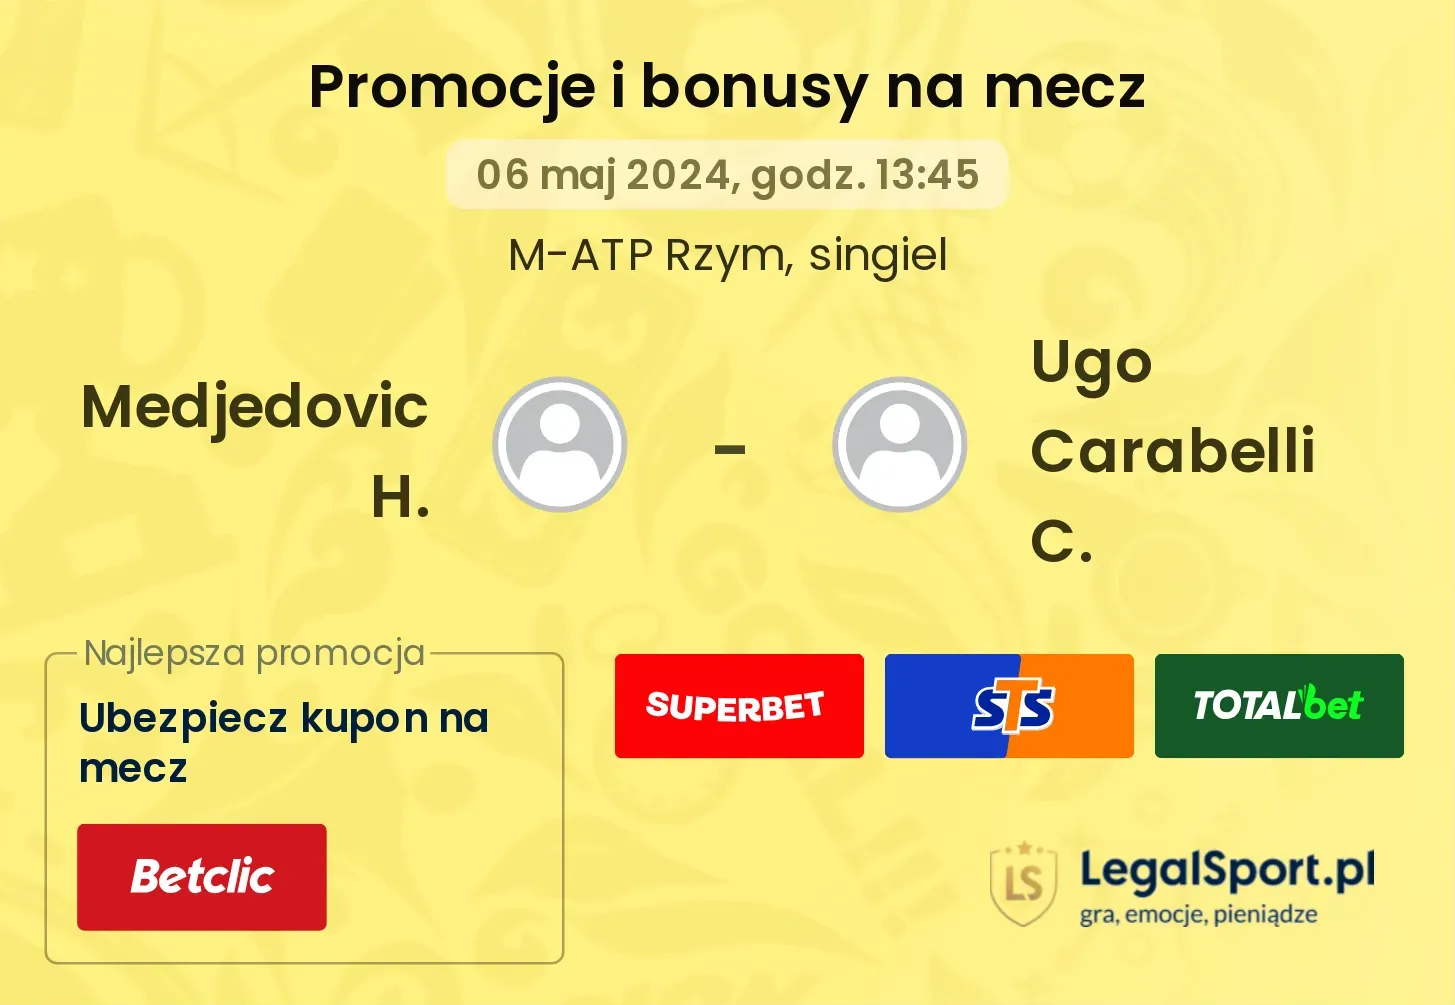 Medjedovic H. - Ugo Carabelli C. promocje bonusy na mecz